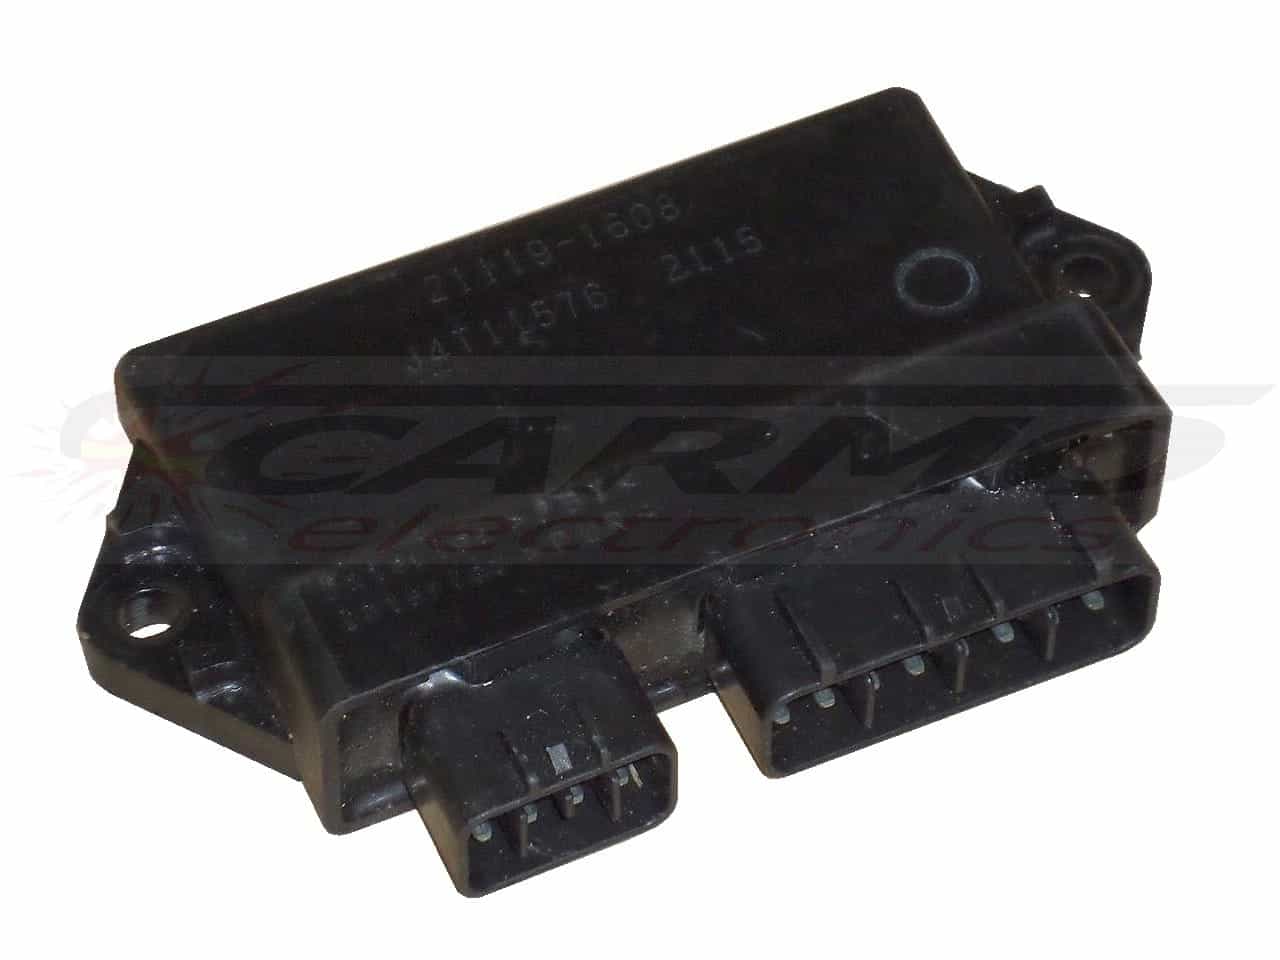 ZX636 (21119-1608, J4T11576) CDI ECU igniter module